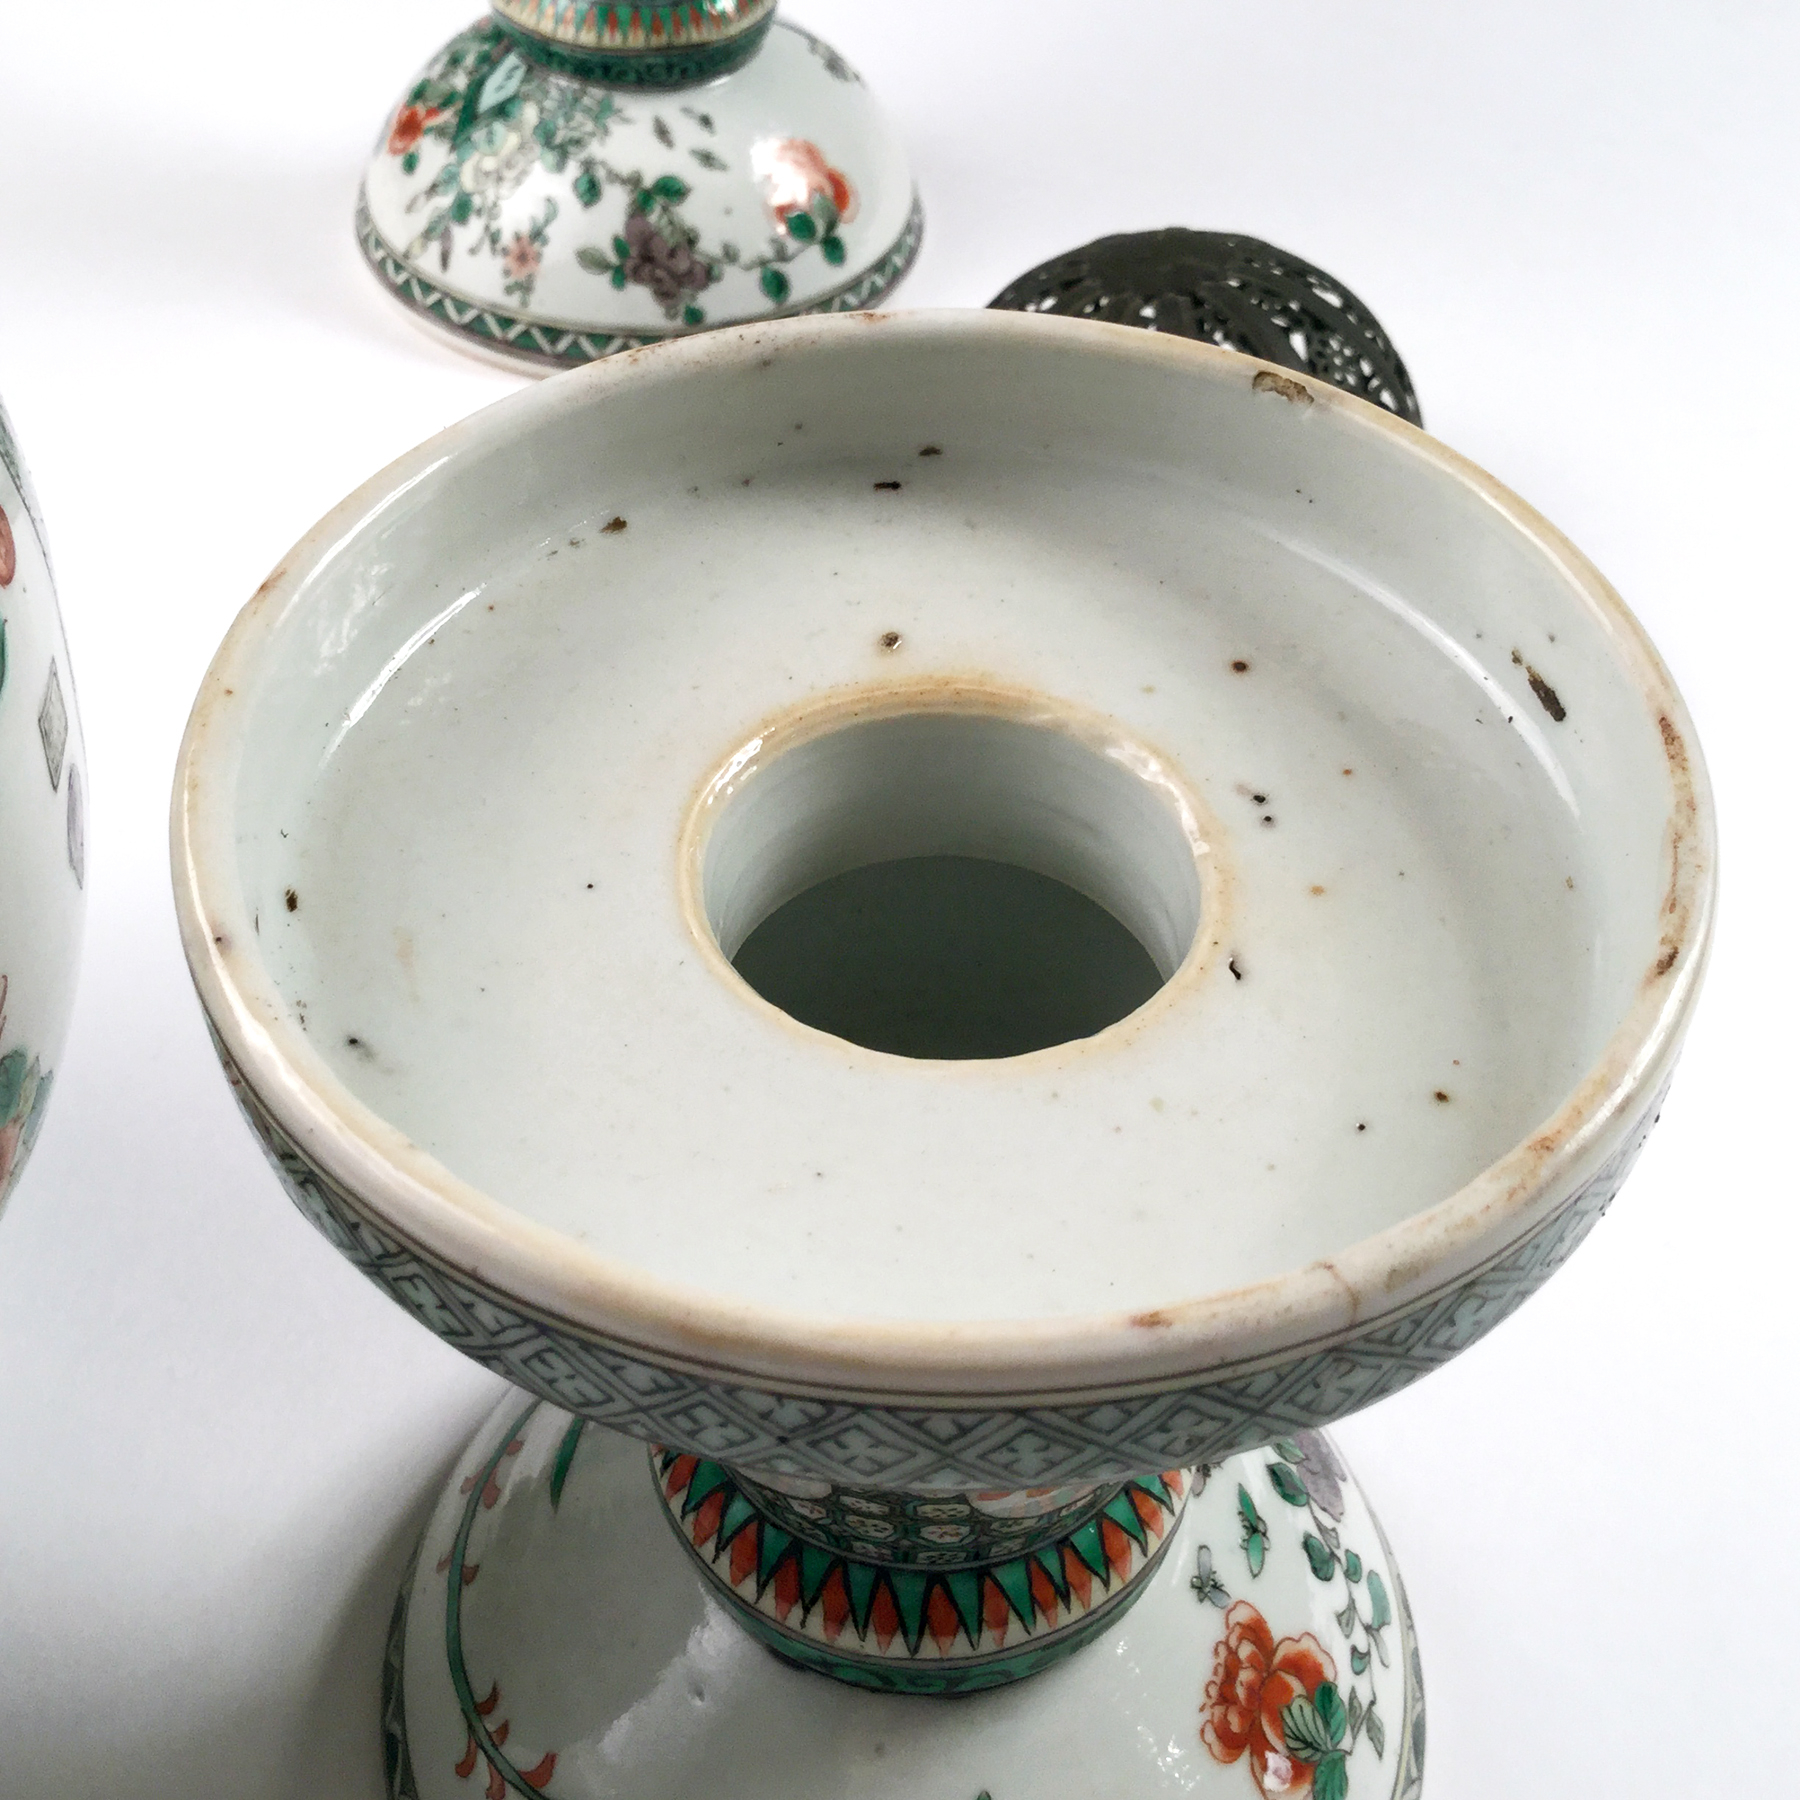 Chine, paire de lanternes en porcelaine, 19ème siècle